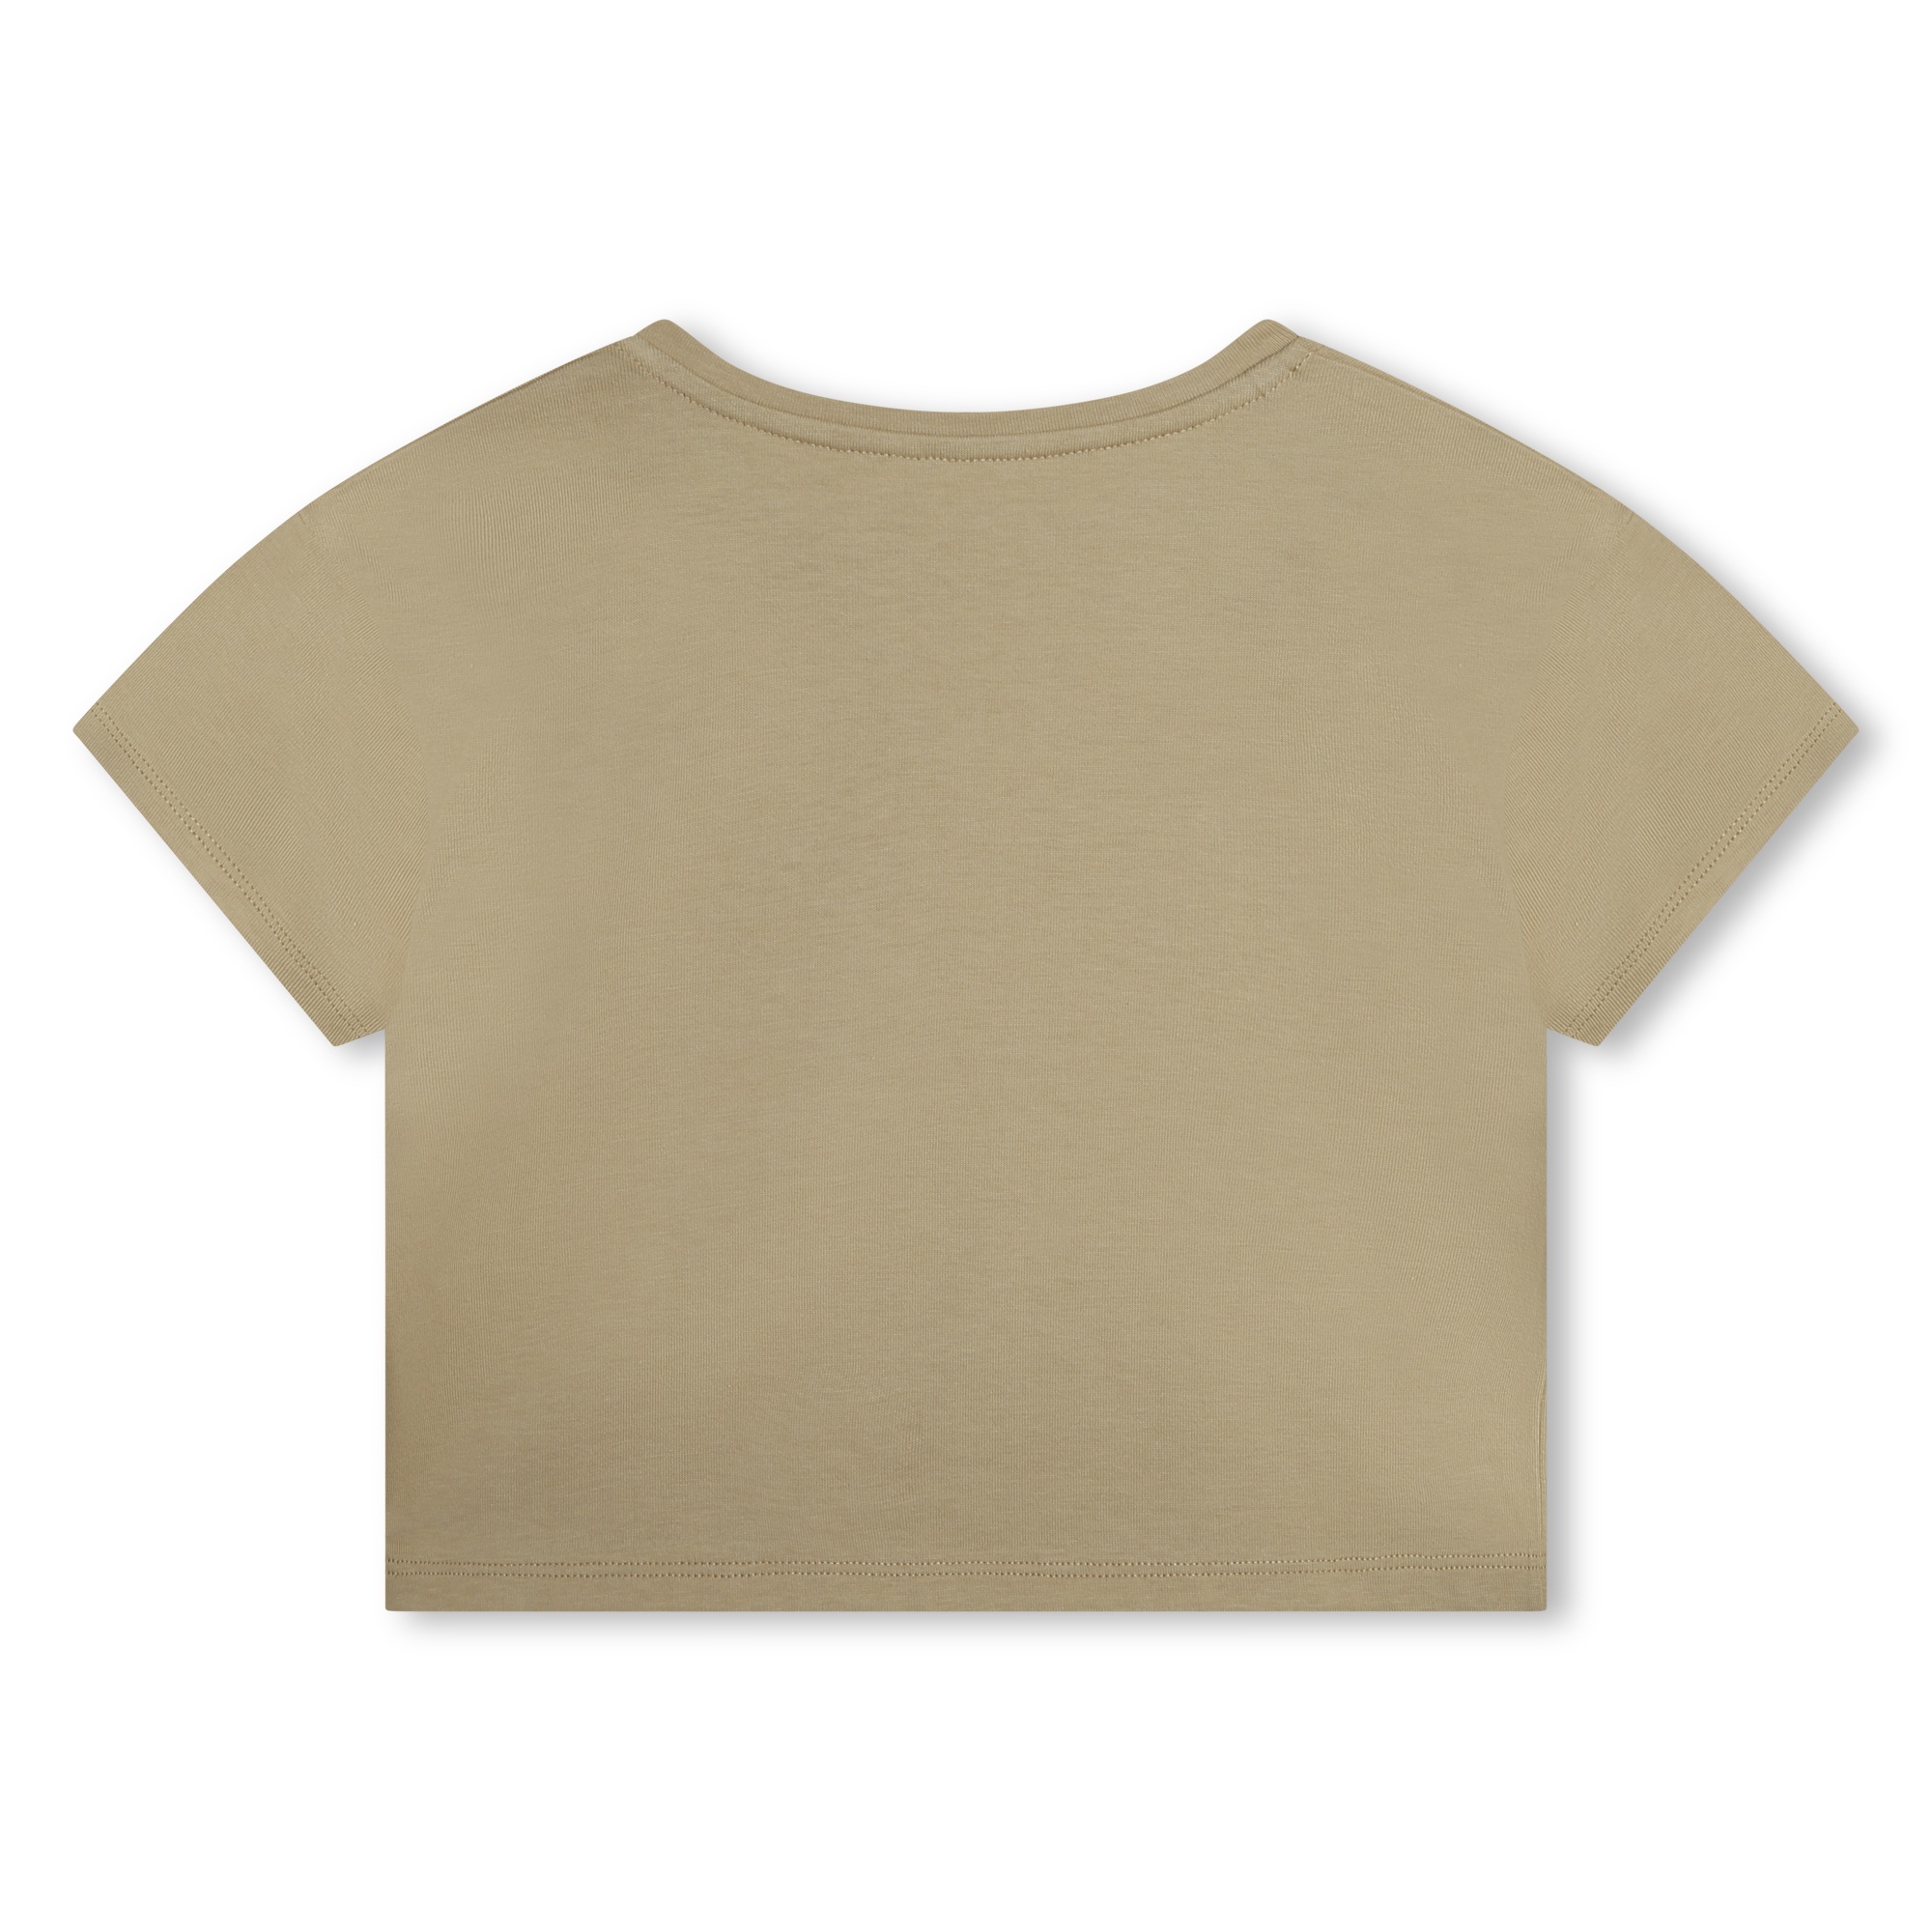 T-shirt met korte mouwen MICHAEL KORS Voor